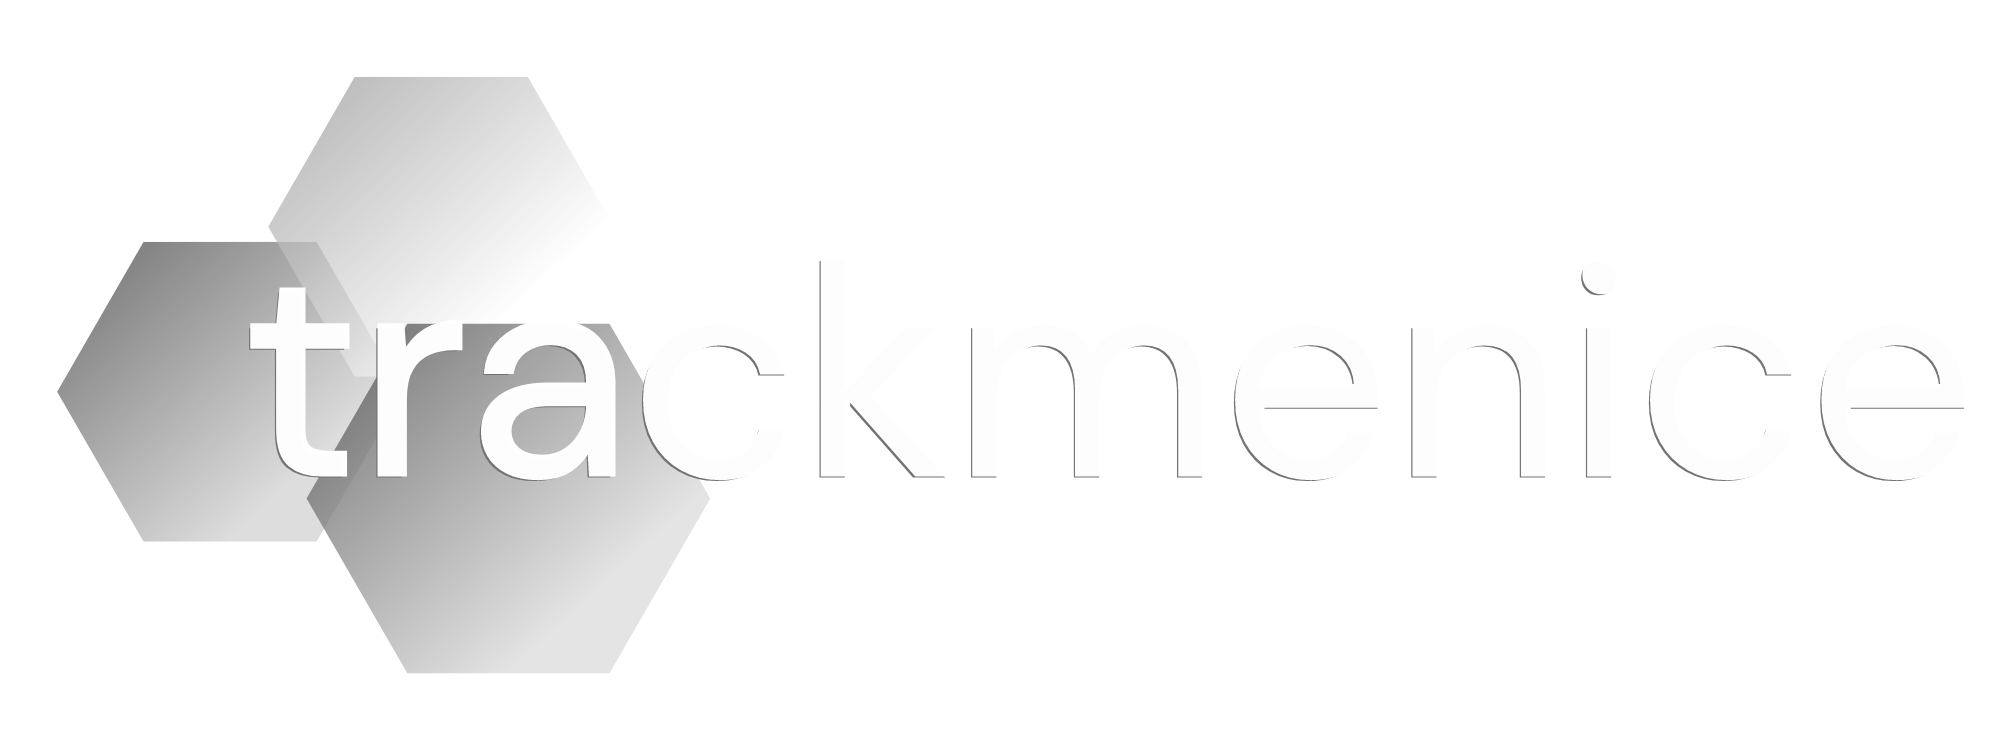 trackmenice_logo